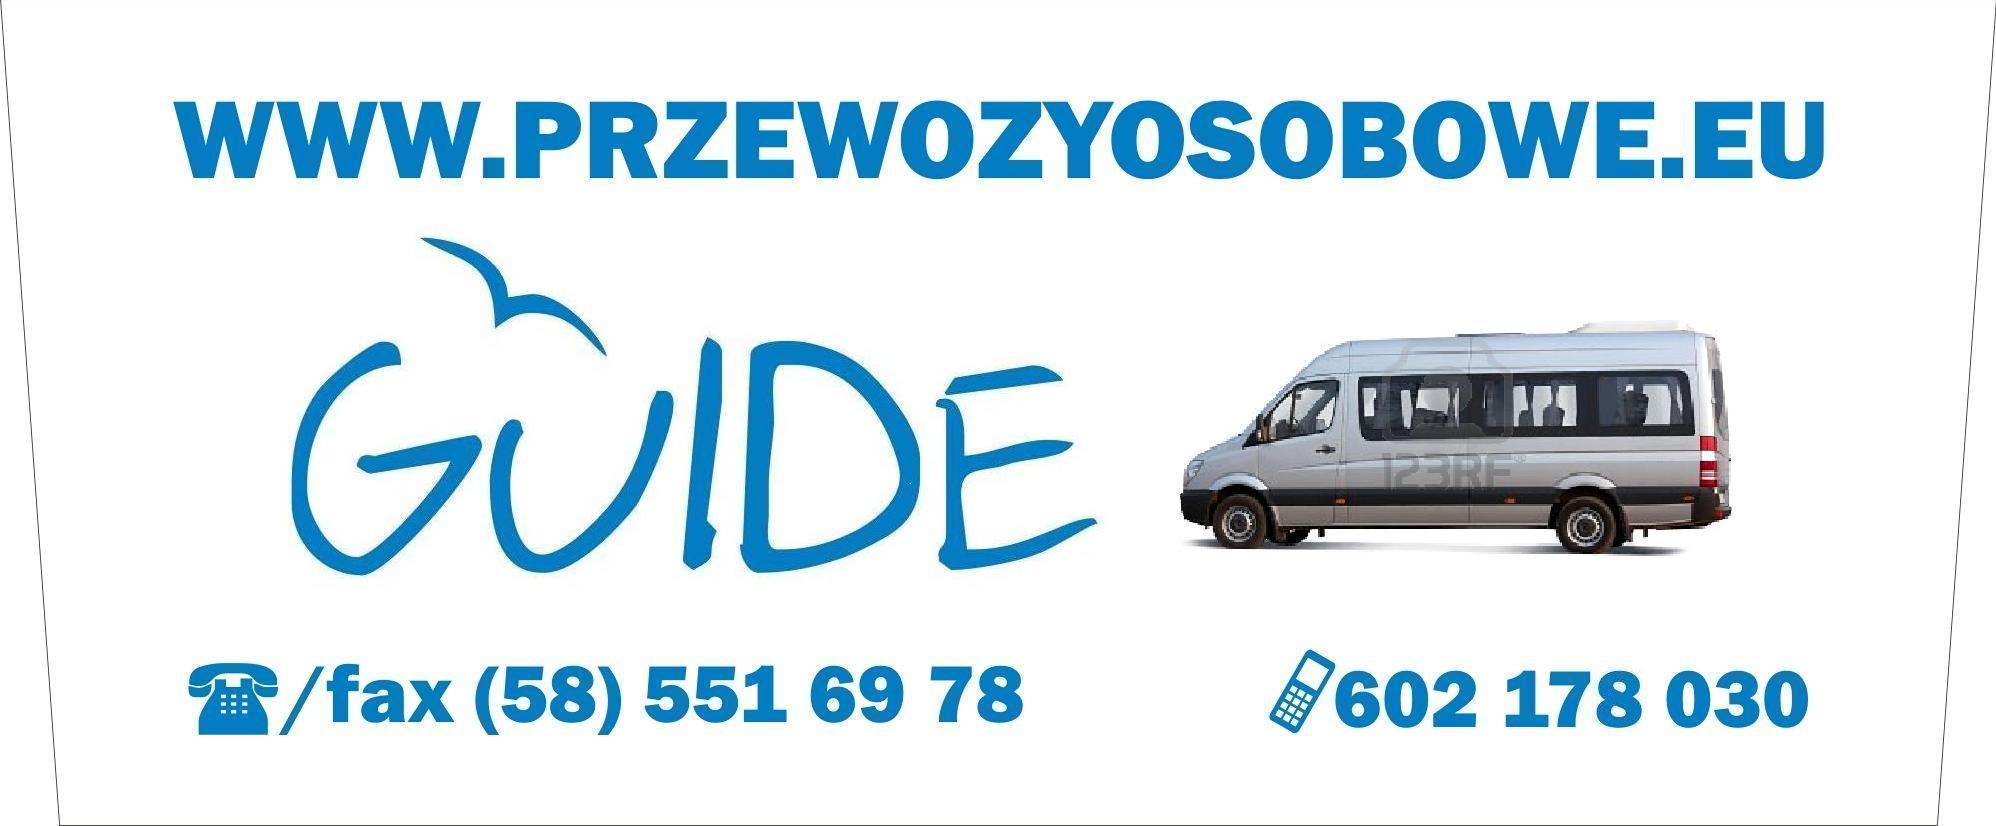 GUIDE BUS - MERCEDESY -  przewoz osob, Sopot Gdansk Gdynia, pomorskie